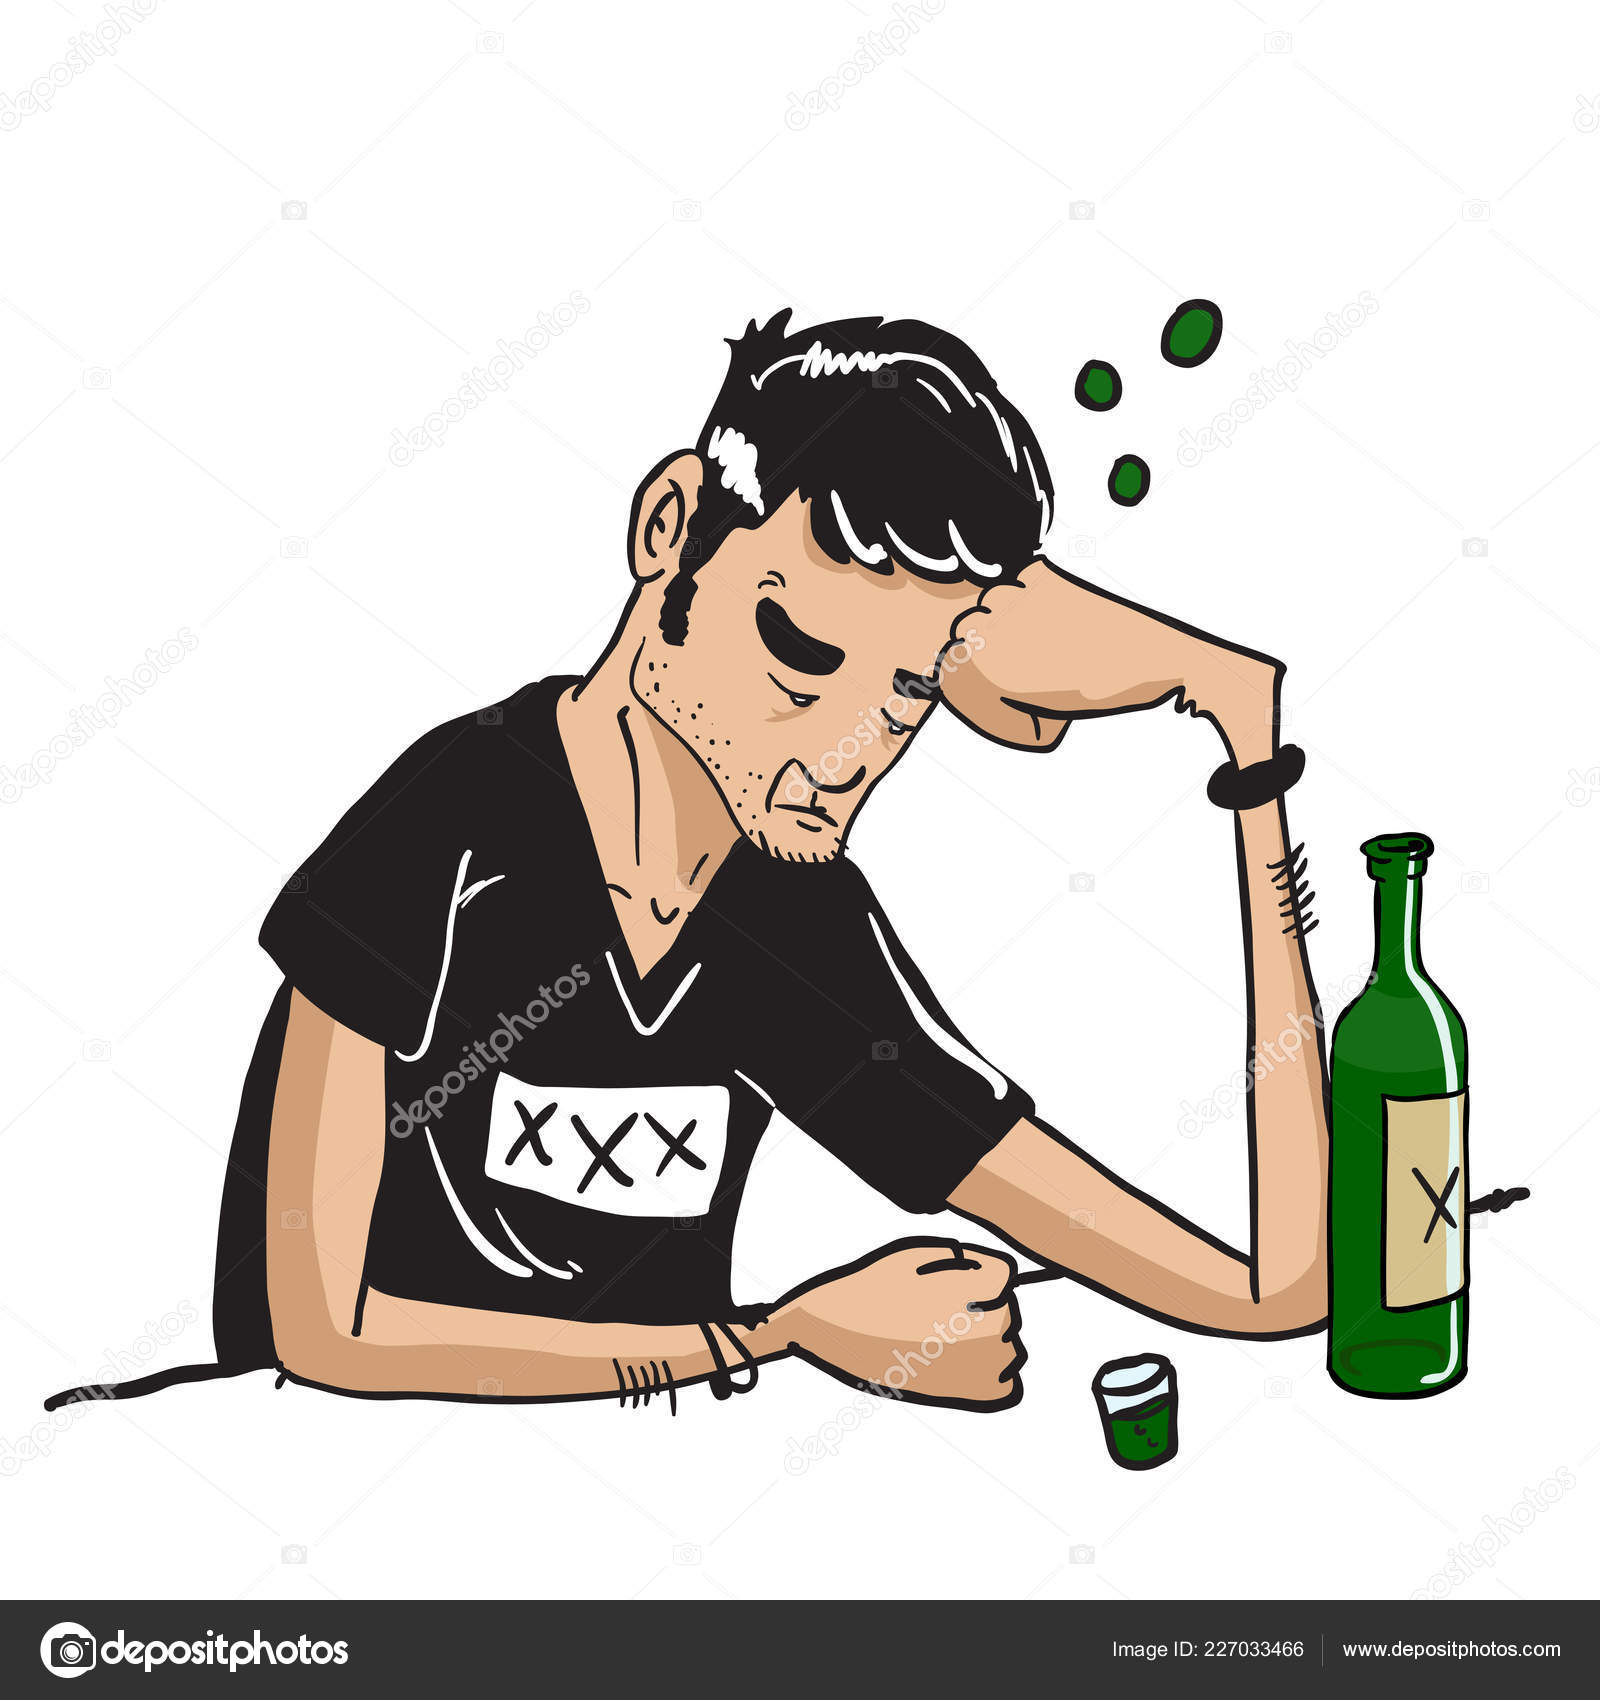 Anime homem sentado em uma borda com uma garrafa de cerveja